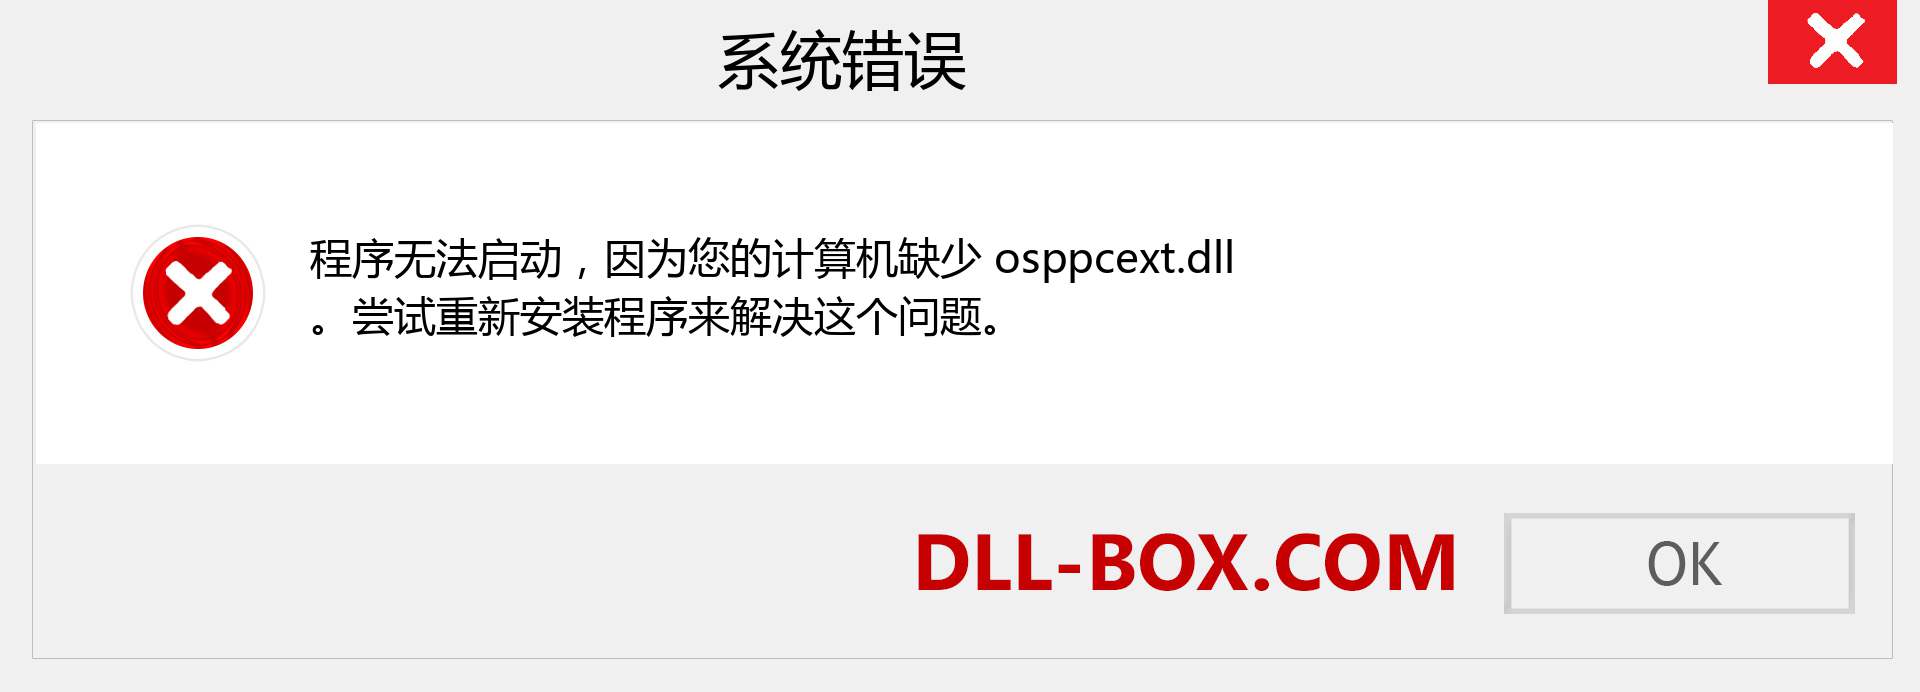 osppcext.dll 文件丢失？。 适用于 Windows 7、8、10 的下载 - 修复 Windows、照片、图像上的 osppcext dll 丢失错误